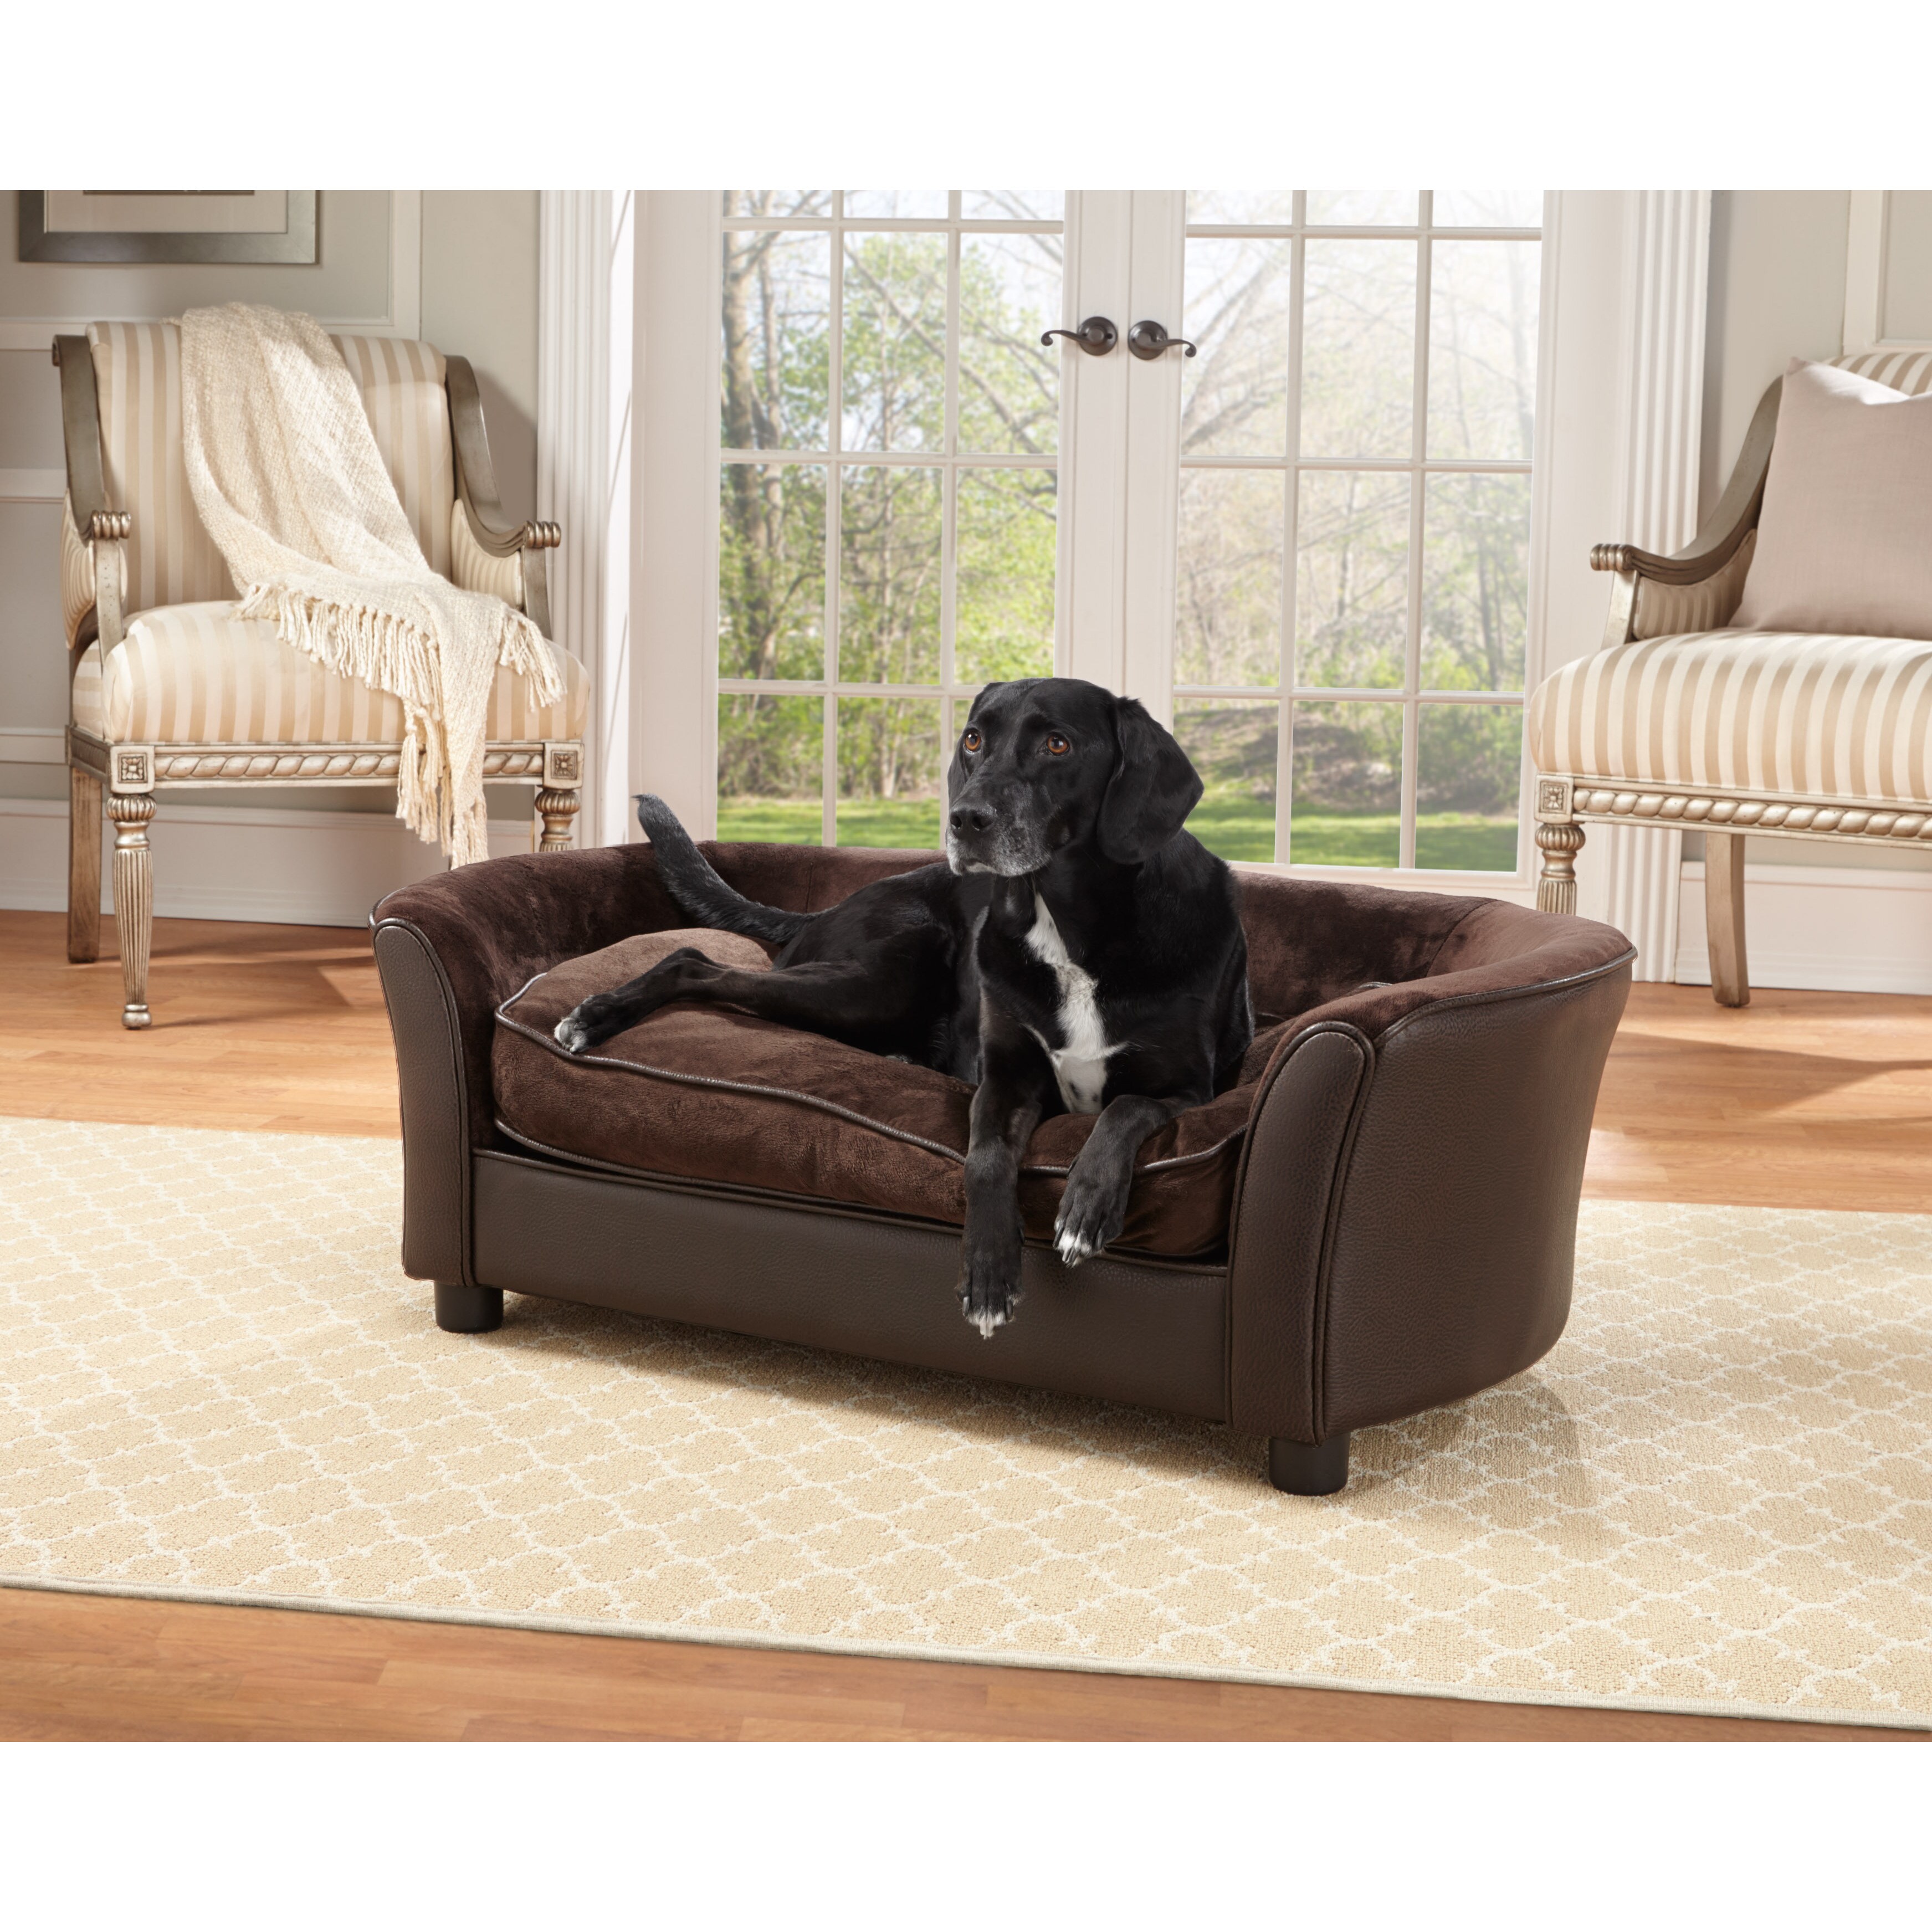 Enchant pets. Мебель для собак. Роскошная мебель для собак. Диван для животных. Животные на диване.